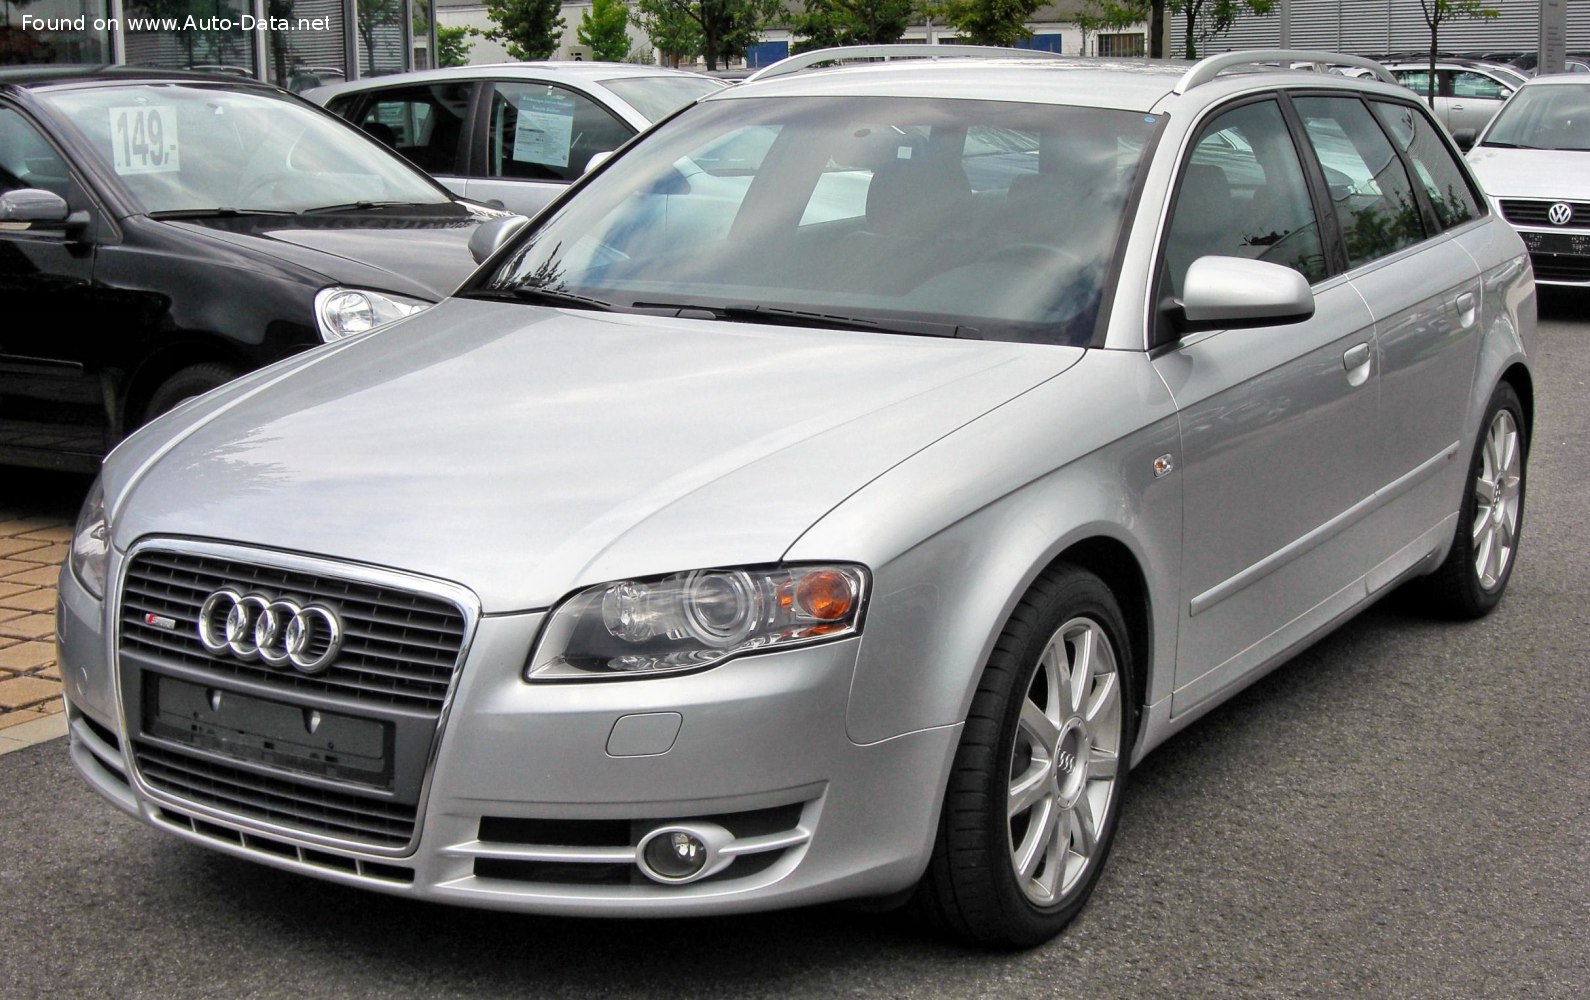 Topic Officiel] Audi A4 [B7] (2004-2008) - Page 84 - A4 - Audi